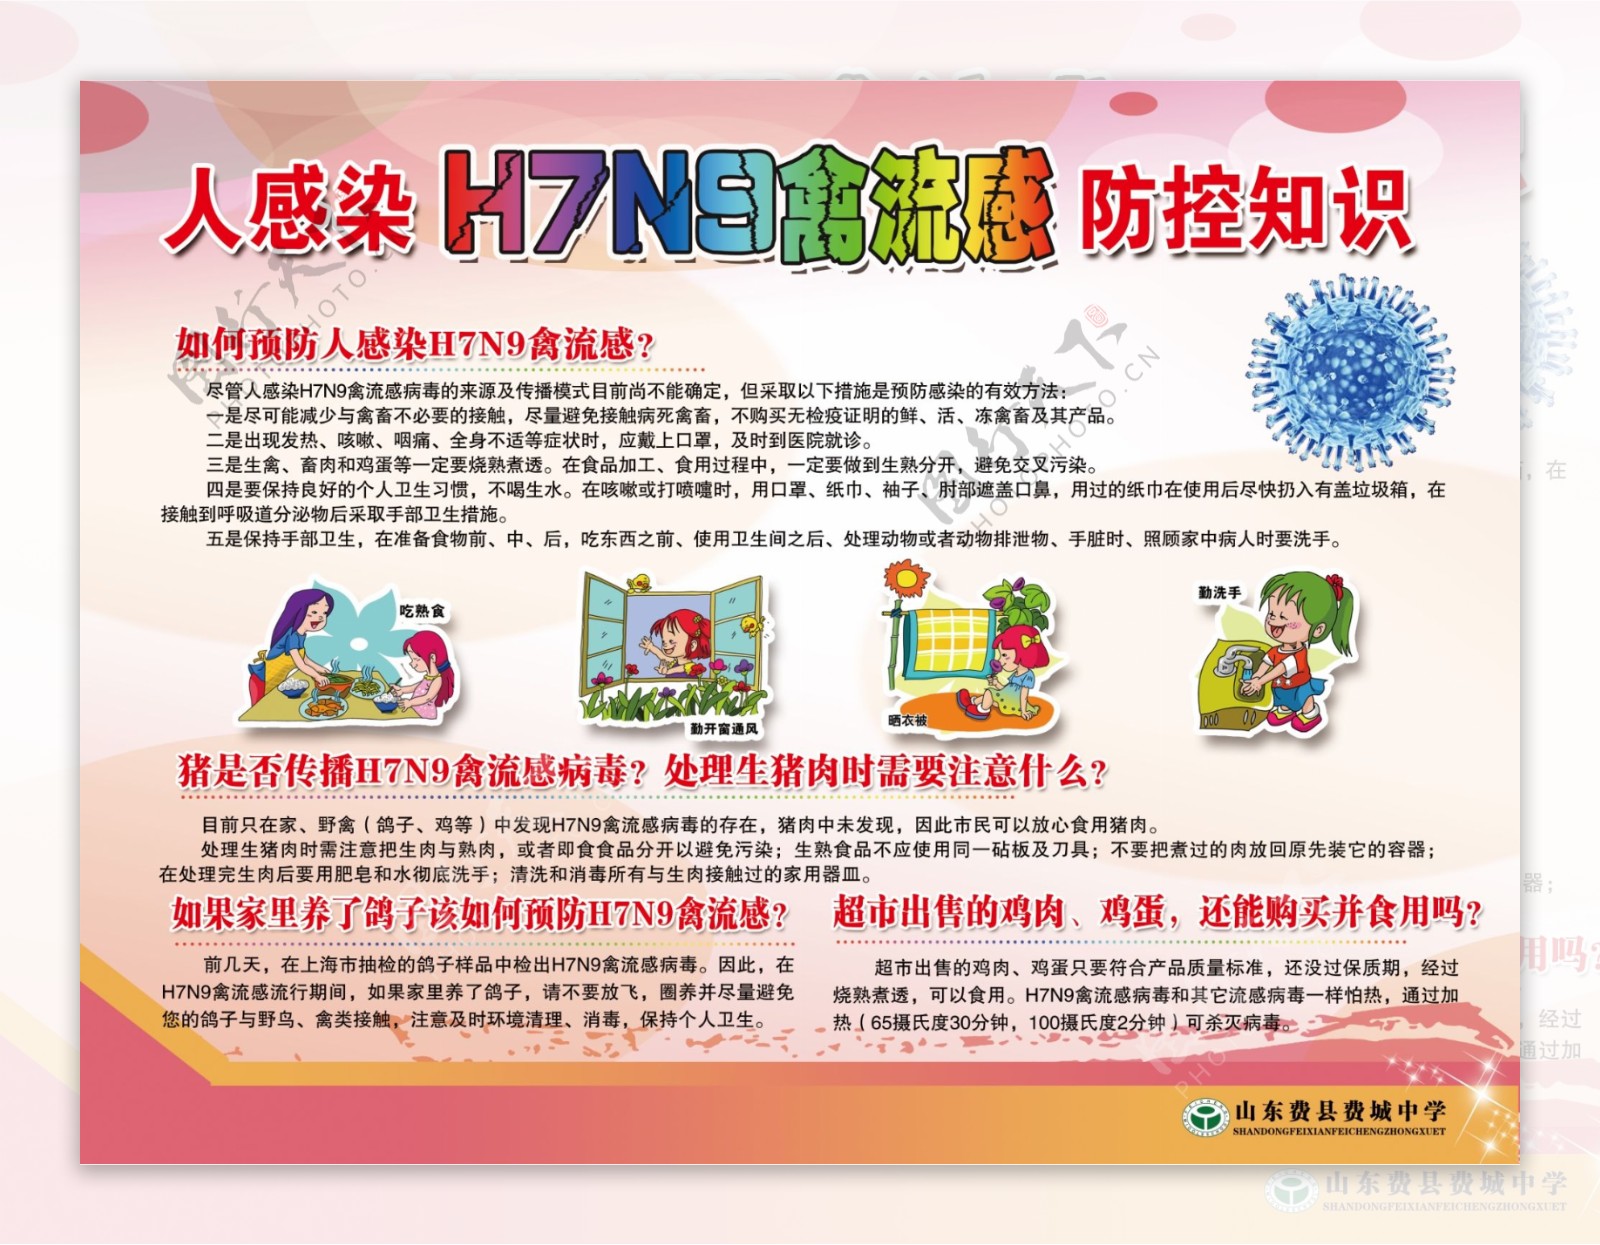 禽流感学校展板H7N9图片